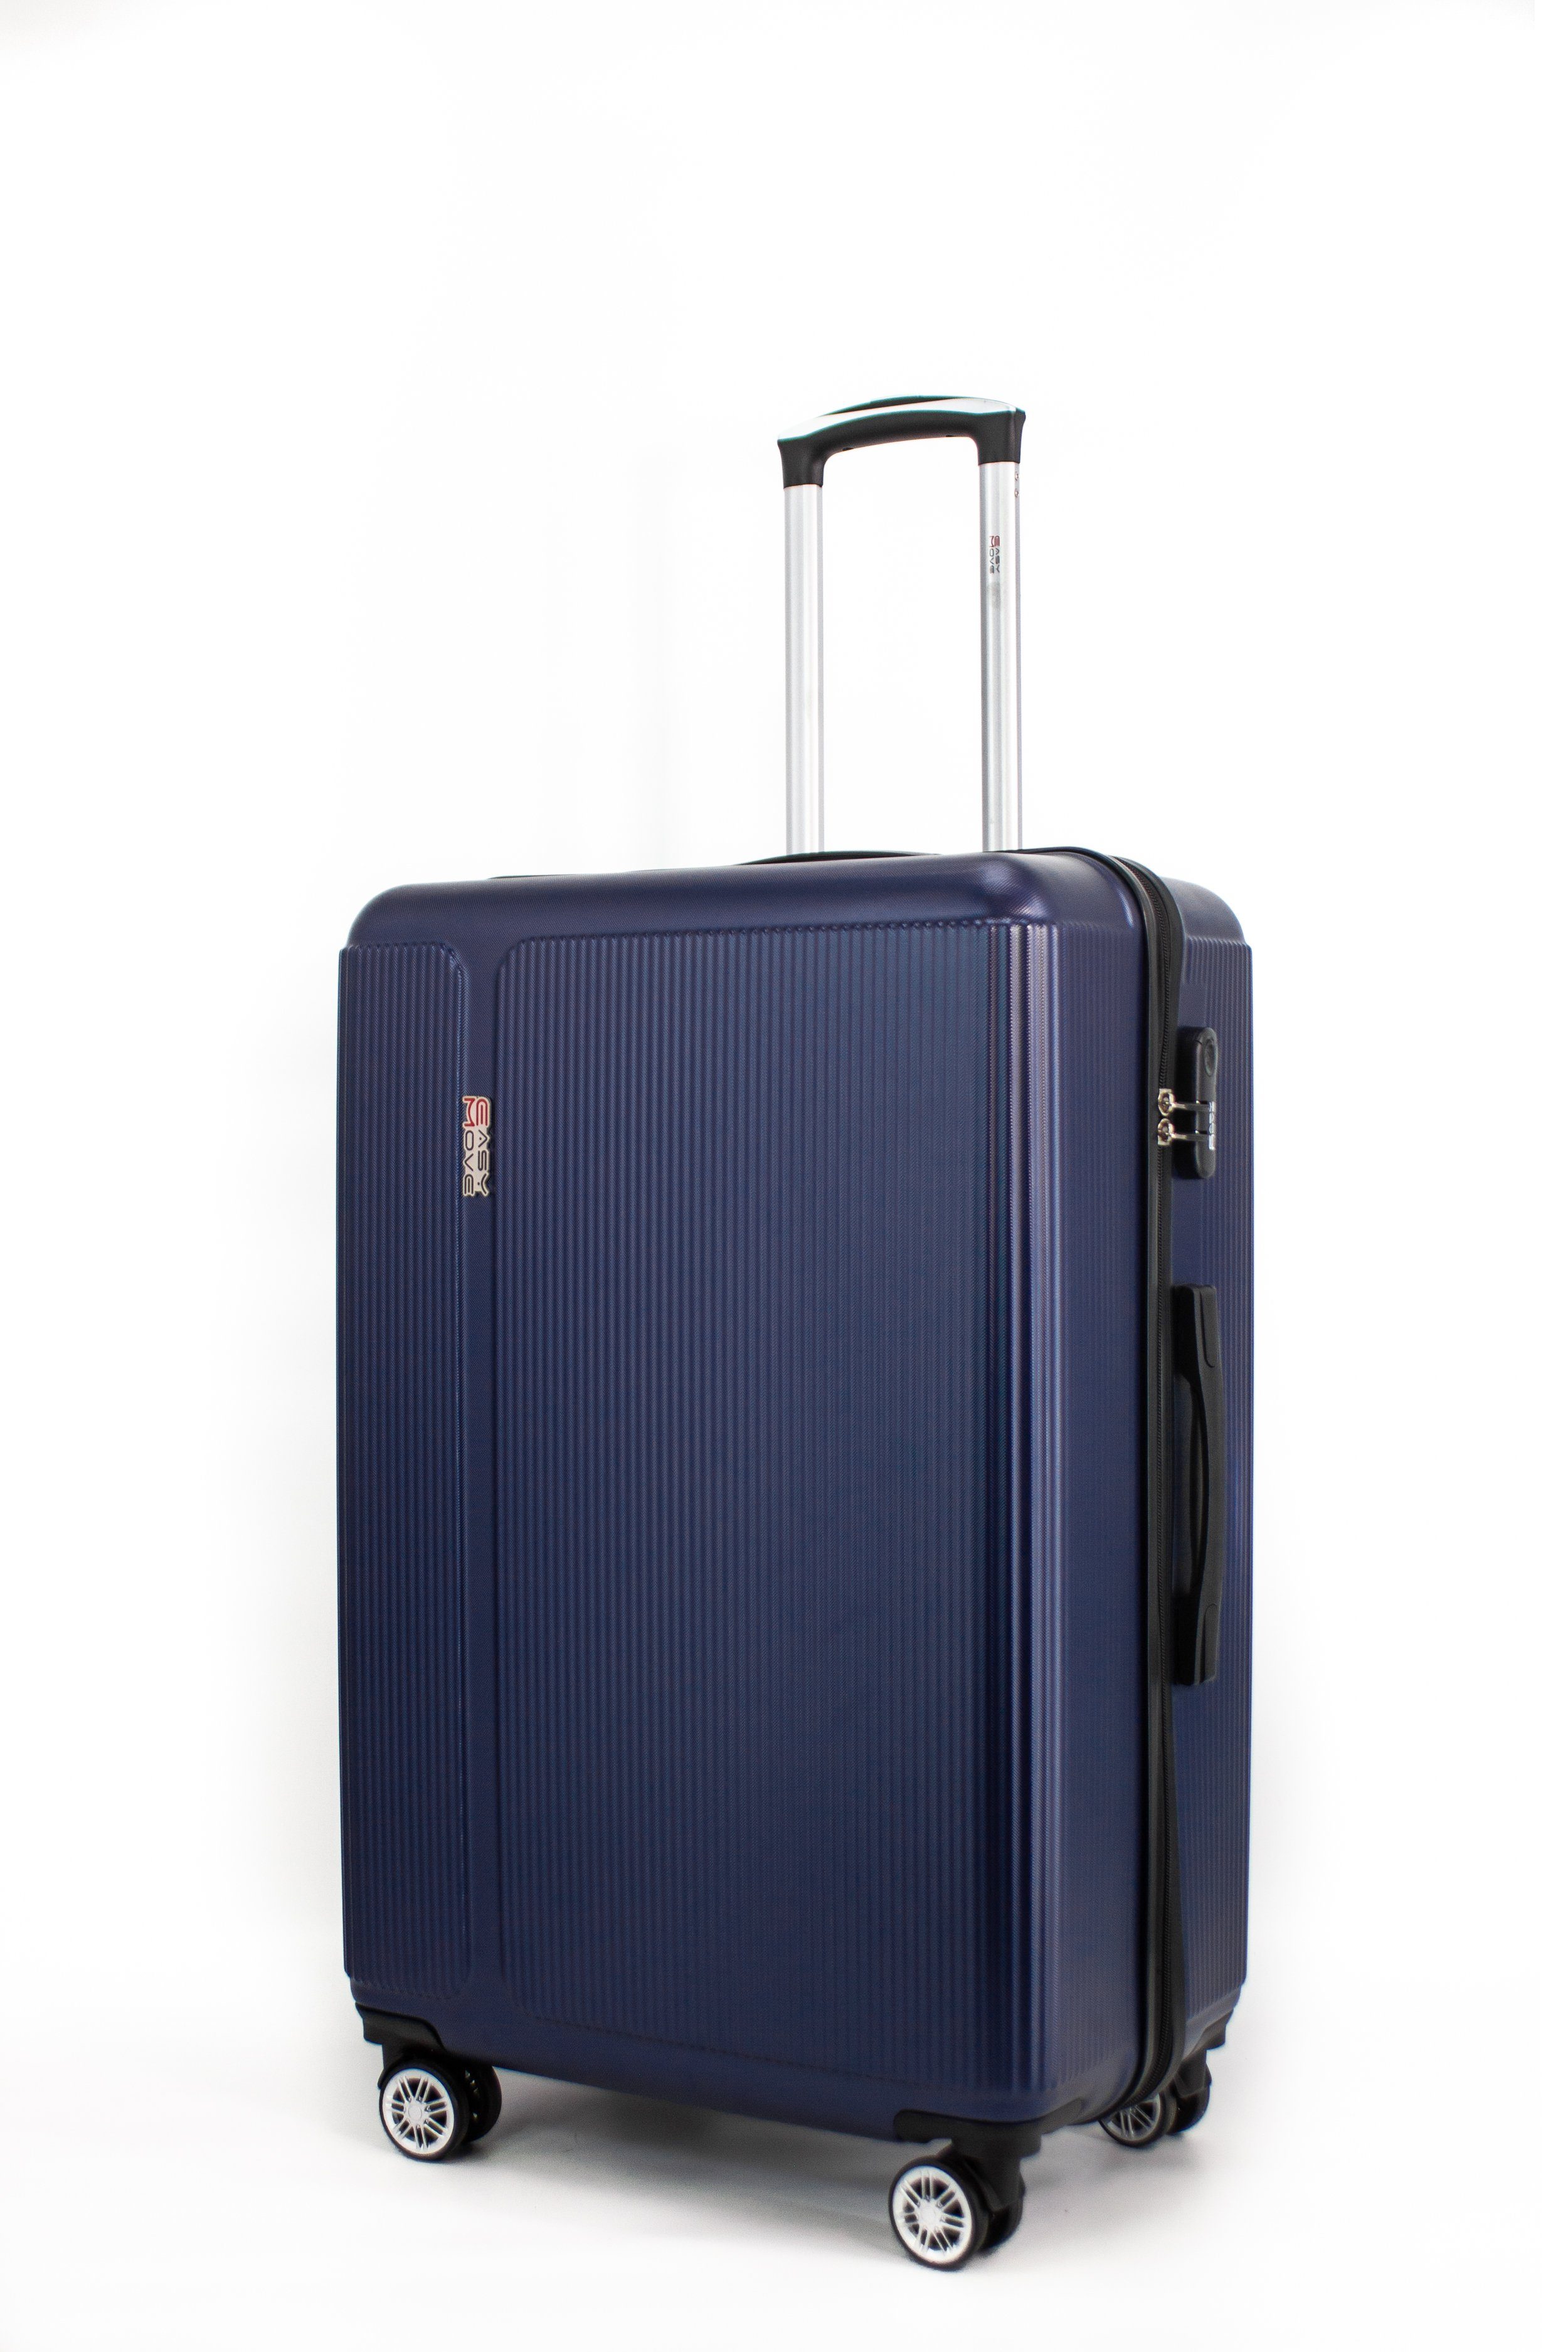 Hartschalen-Koffer,360° Doppelrollen, Ginevra ABS, Blue 100% Dark IATA Hartschalen-Trolley 55,Reisekoffer Move Konform Easy